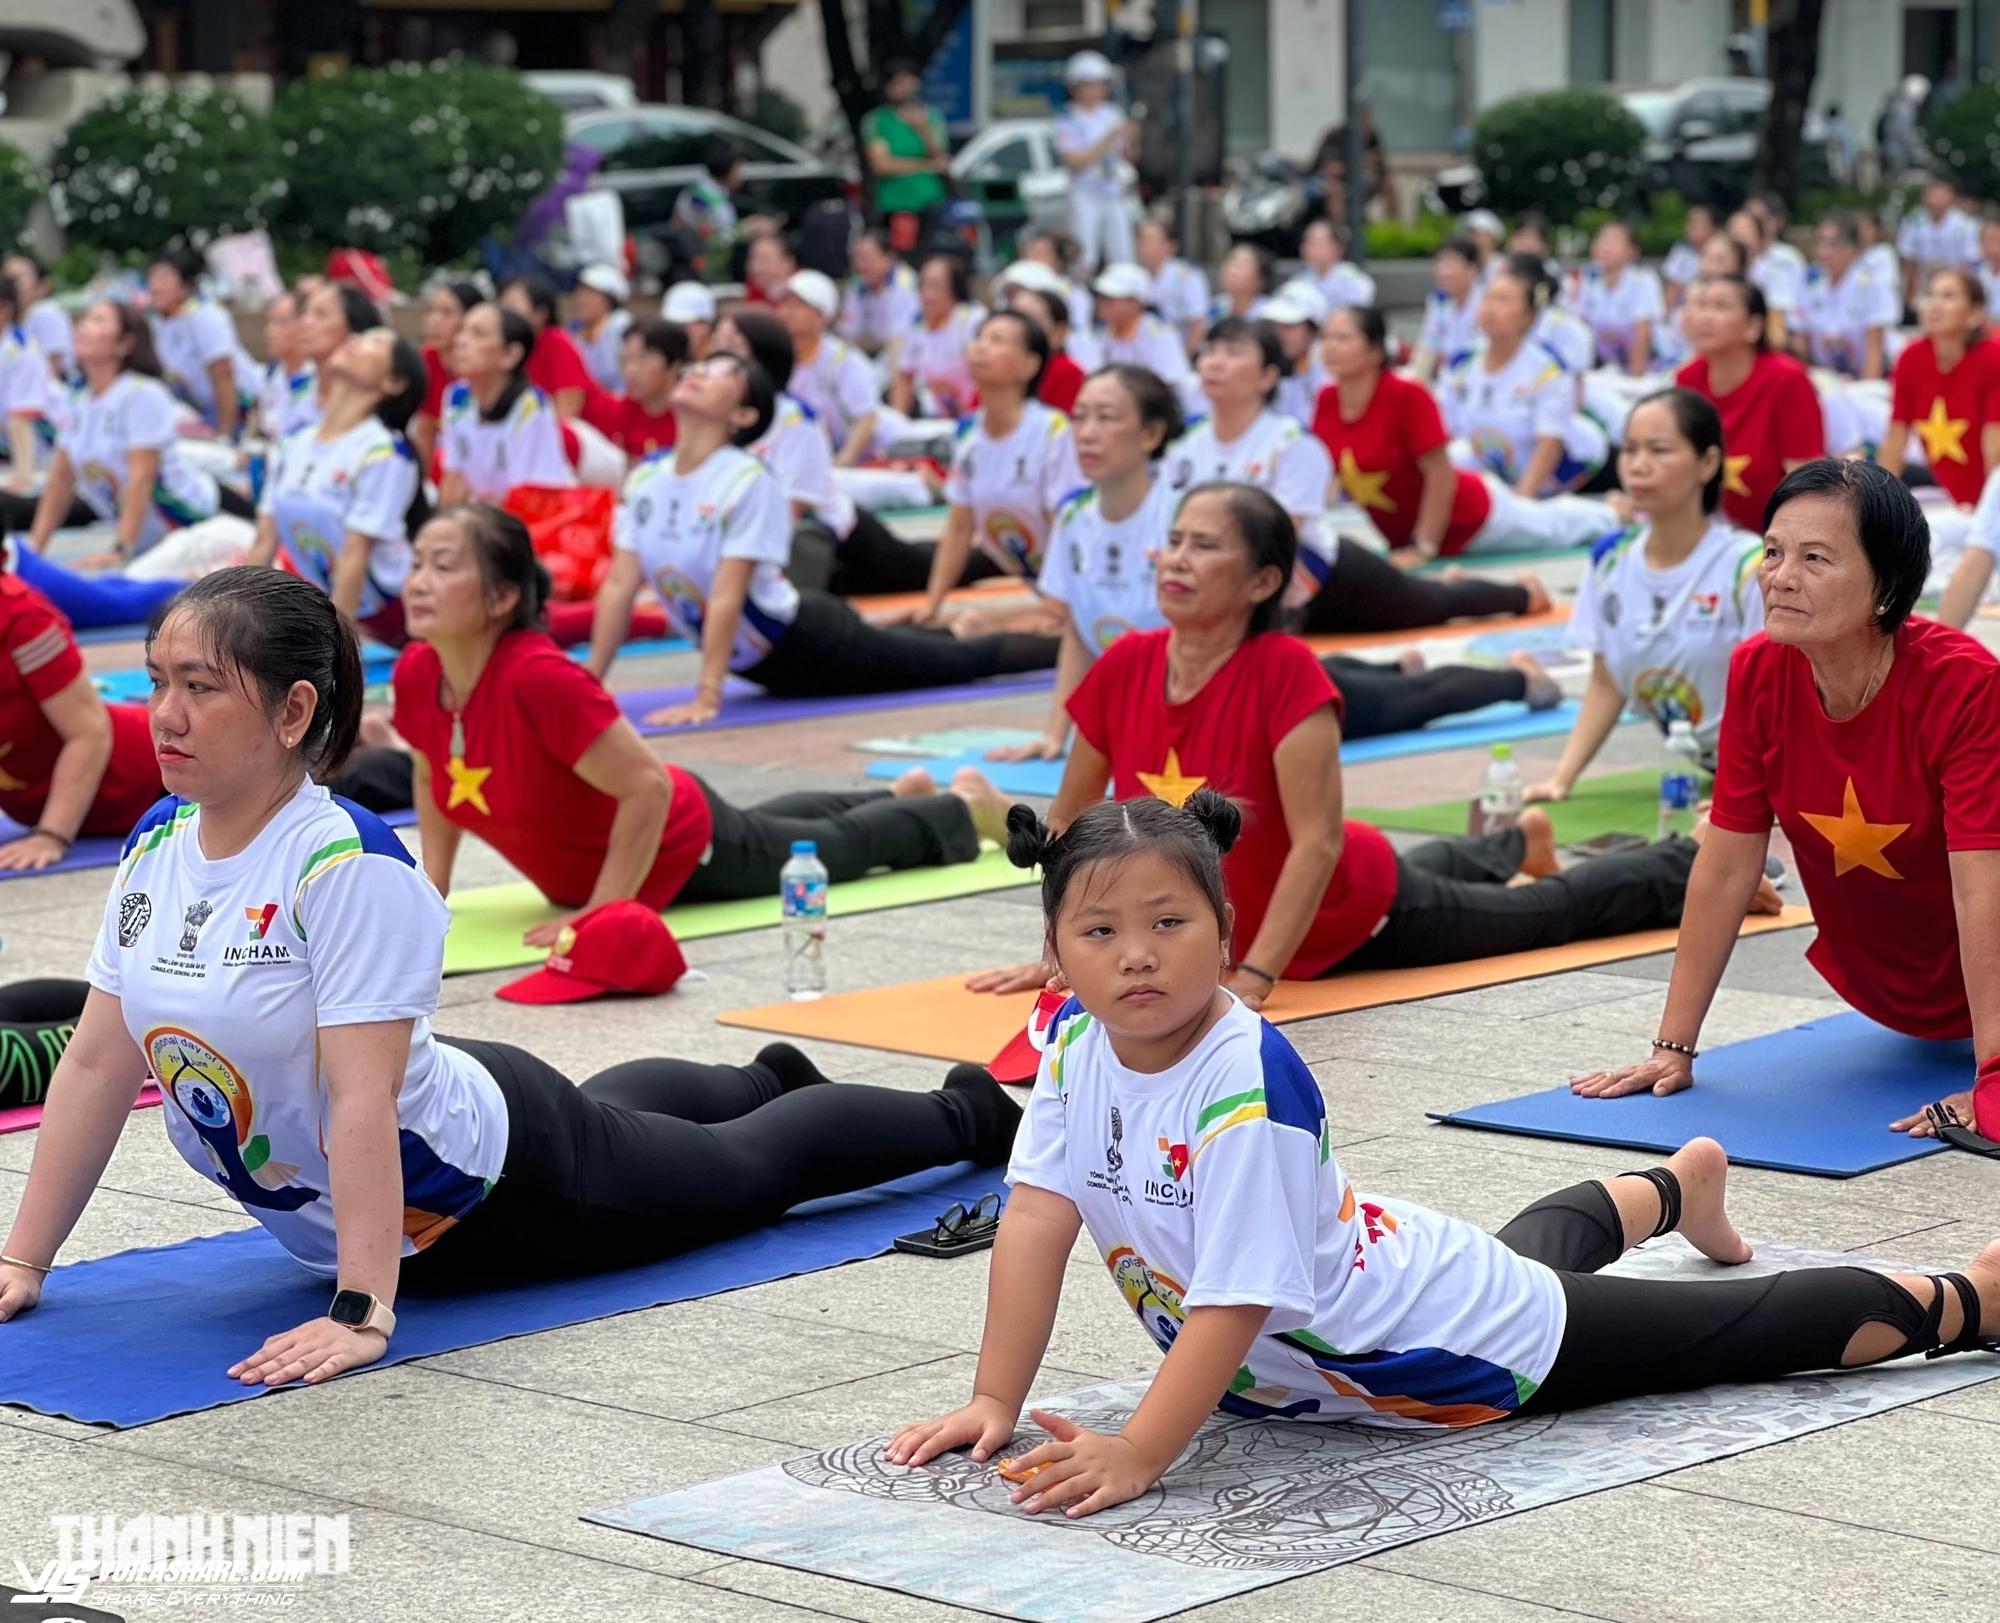 Cả ngàn người đến phố đi bộ Nguyễn Huệ tập yoga hôm nay- Ảnh 6.